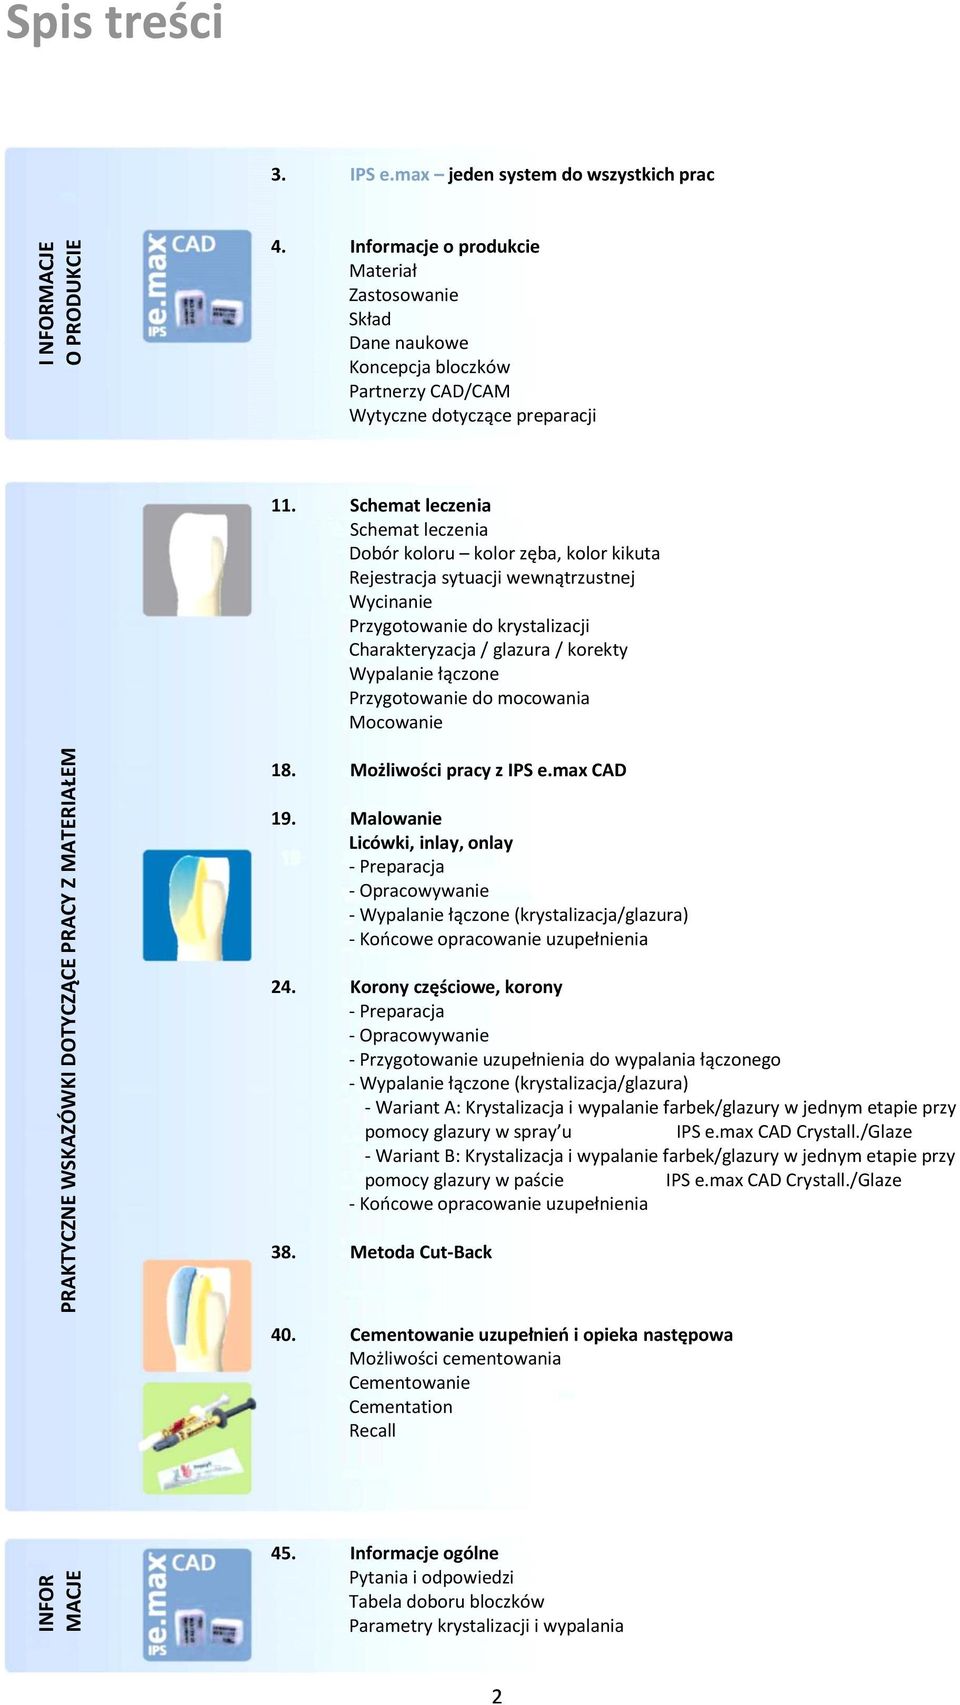 Schemat leczenia Schemat leczenia Dobór koloru kolor zęba, kolor kikuta Rejestracja sytuacji wewnątrzustnej Wycinanie Przygotowanie do krystalizacji Charakteryzacja / glazura / korekty Wypalanie